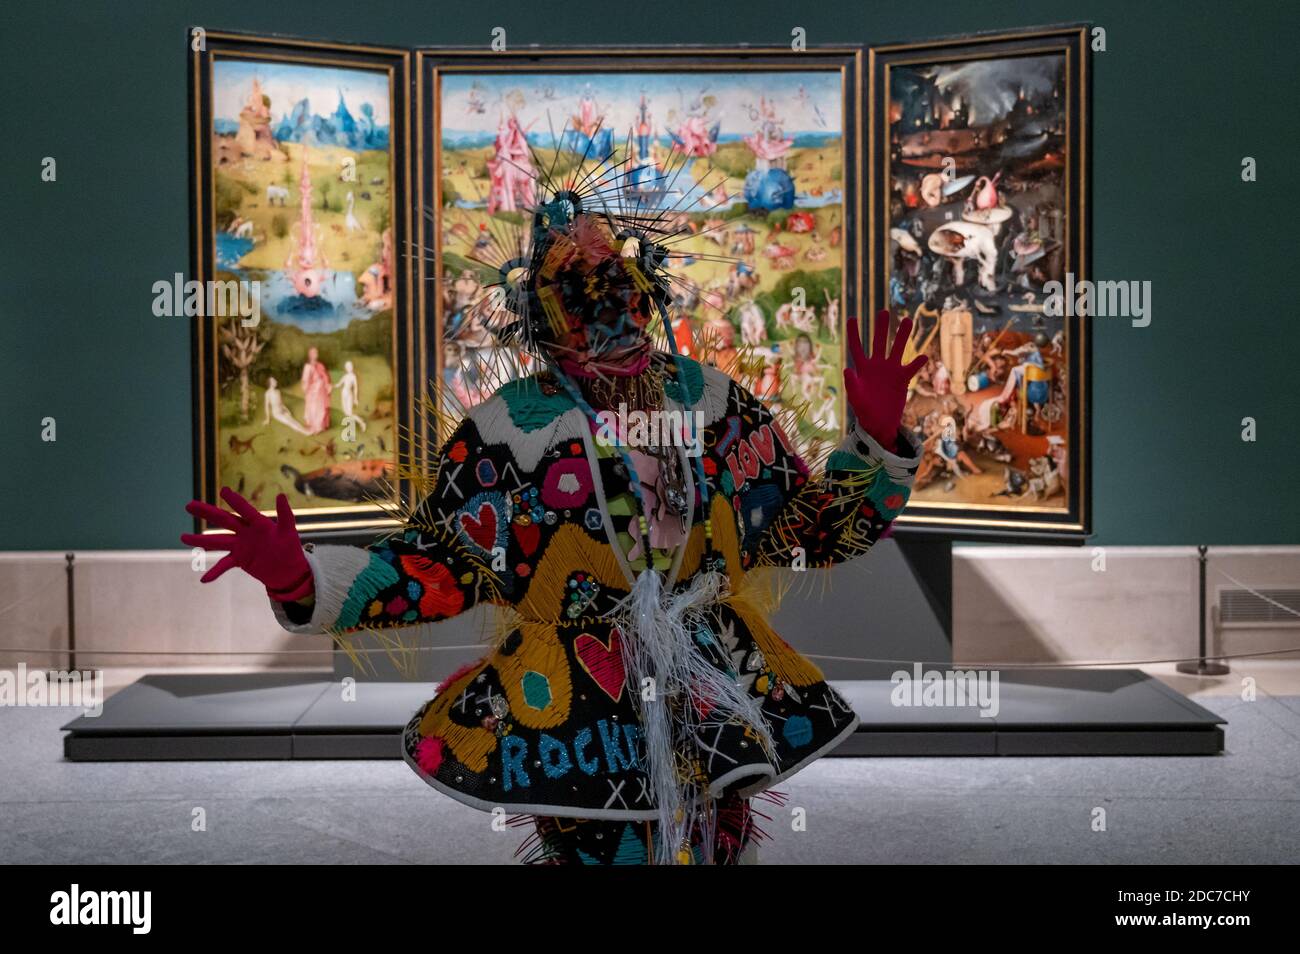 Madrid, Spagna. 19 Nov 2020. L'artista Blanca li balla in una sala con El Bosco (Hieronymus Bosch) che dipinge il Giardino delle delizie terrene, nell'ambito di una rappresentazione per il 201° anniversario del Museo del Prado. Credit: Marcos del Mazo/Alamy Live News Foto Stock